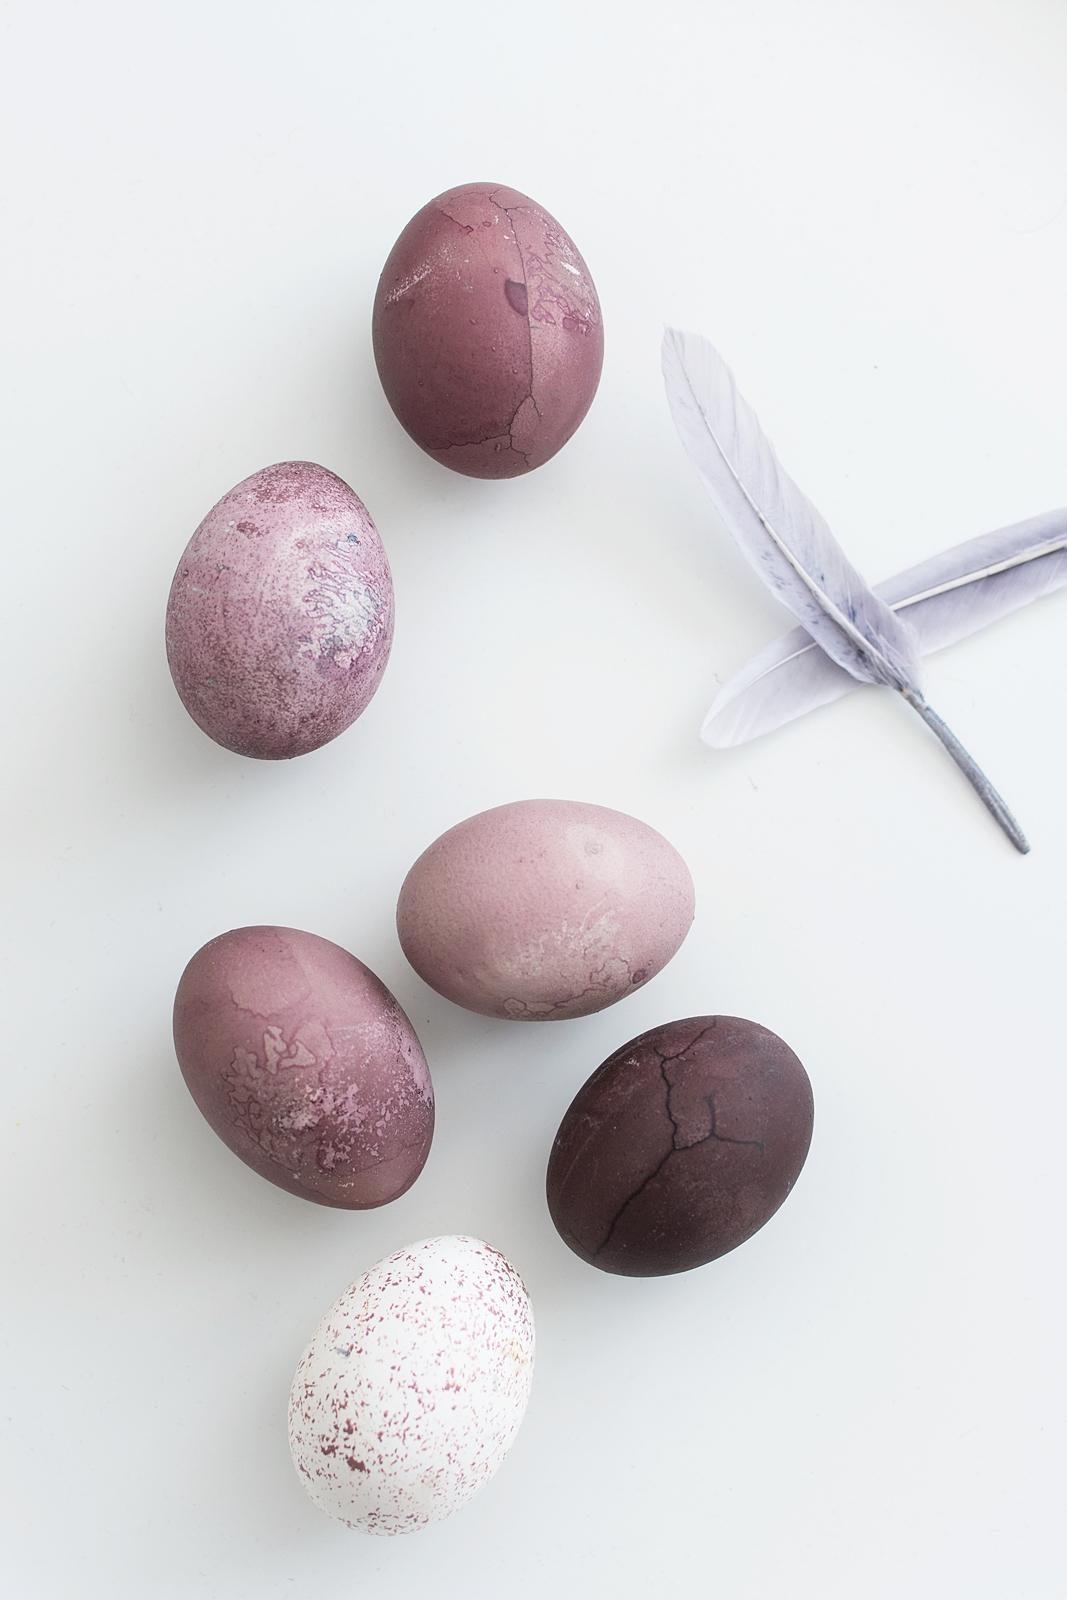 Eier färben ganz ohne Chemie.

#osterdiy #naturfarben #holundersaft